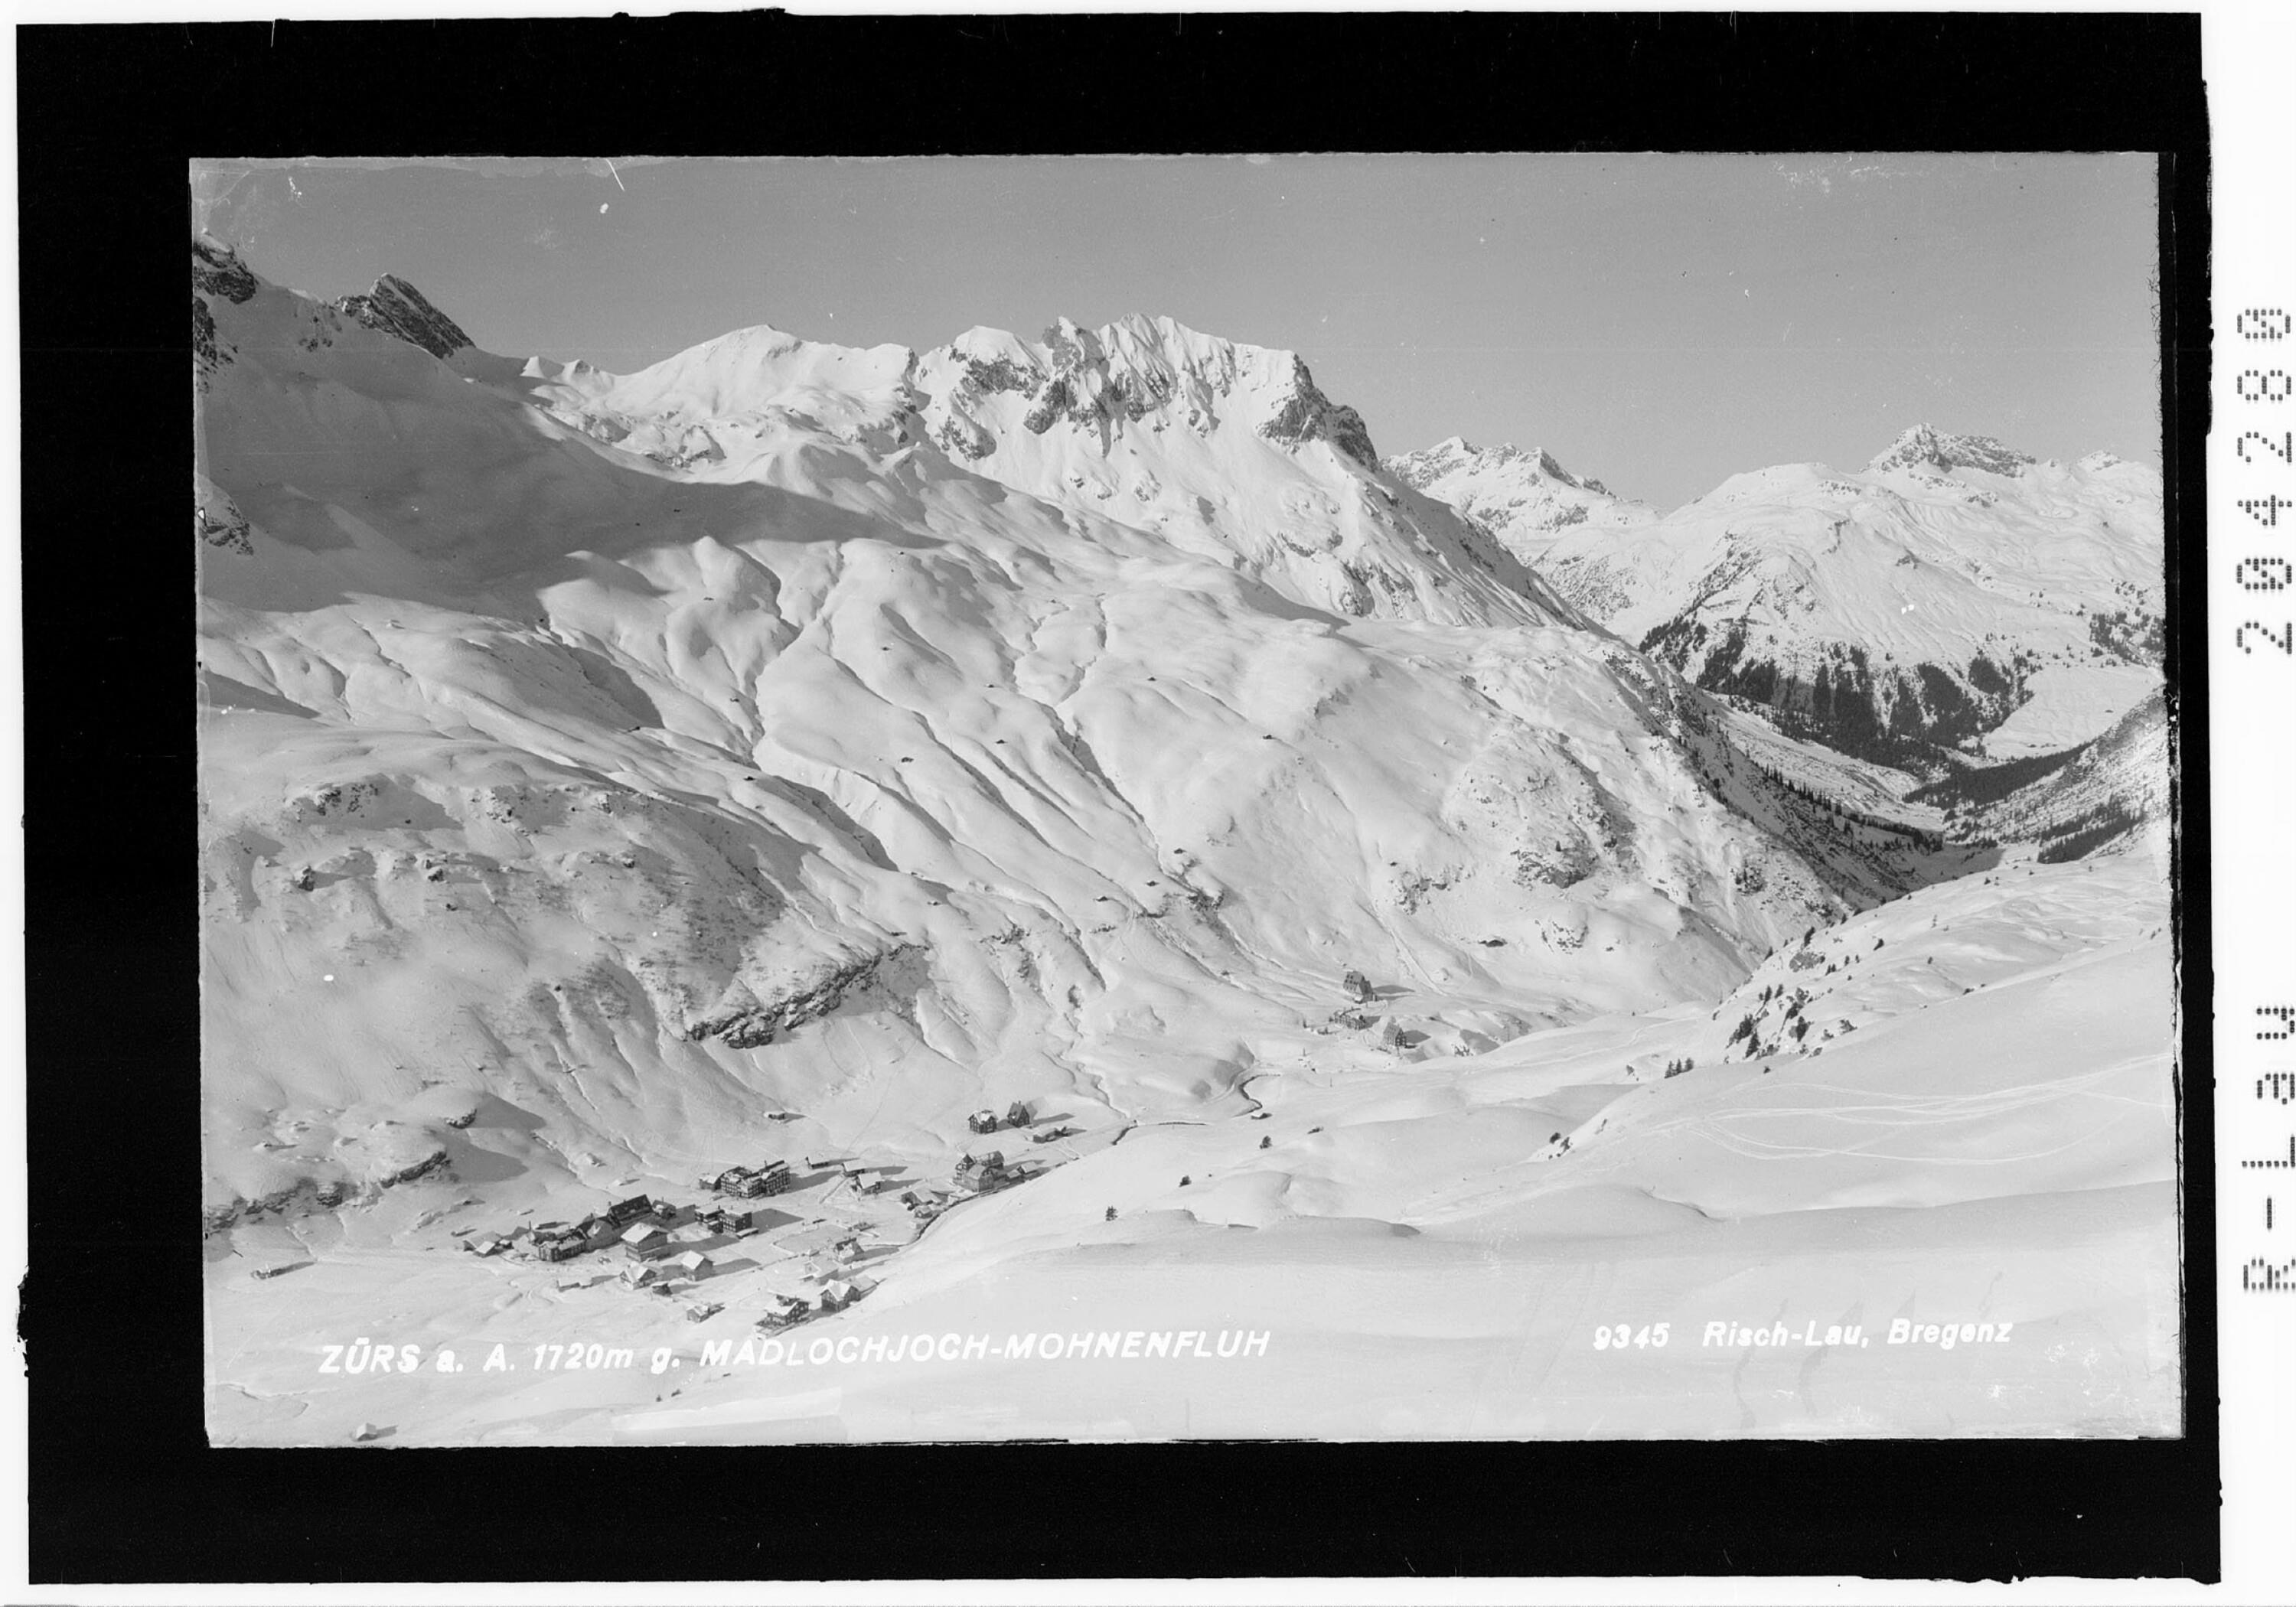 Zürs am Arlberg 1720 m gegen Mahdlochjoch - Mohnenfluh></div>


    <hr>
    <div class=